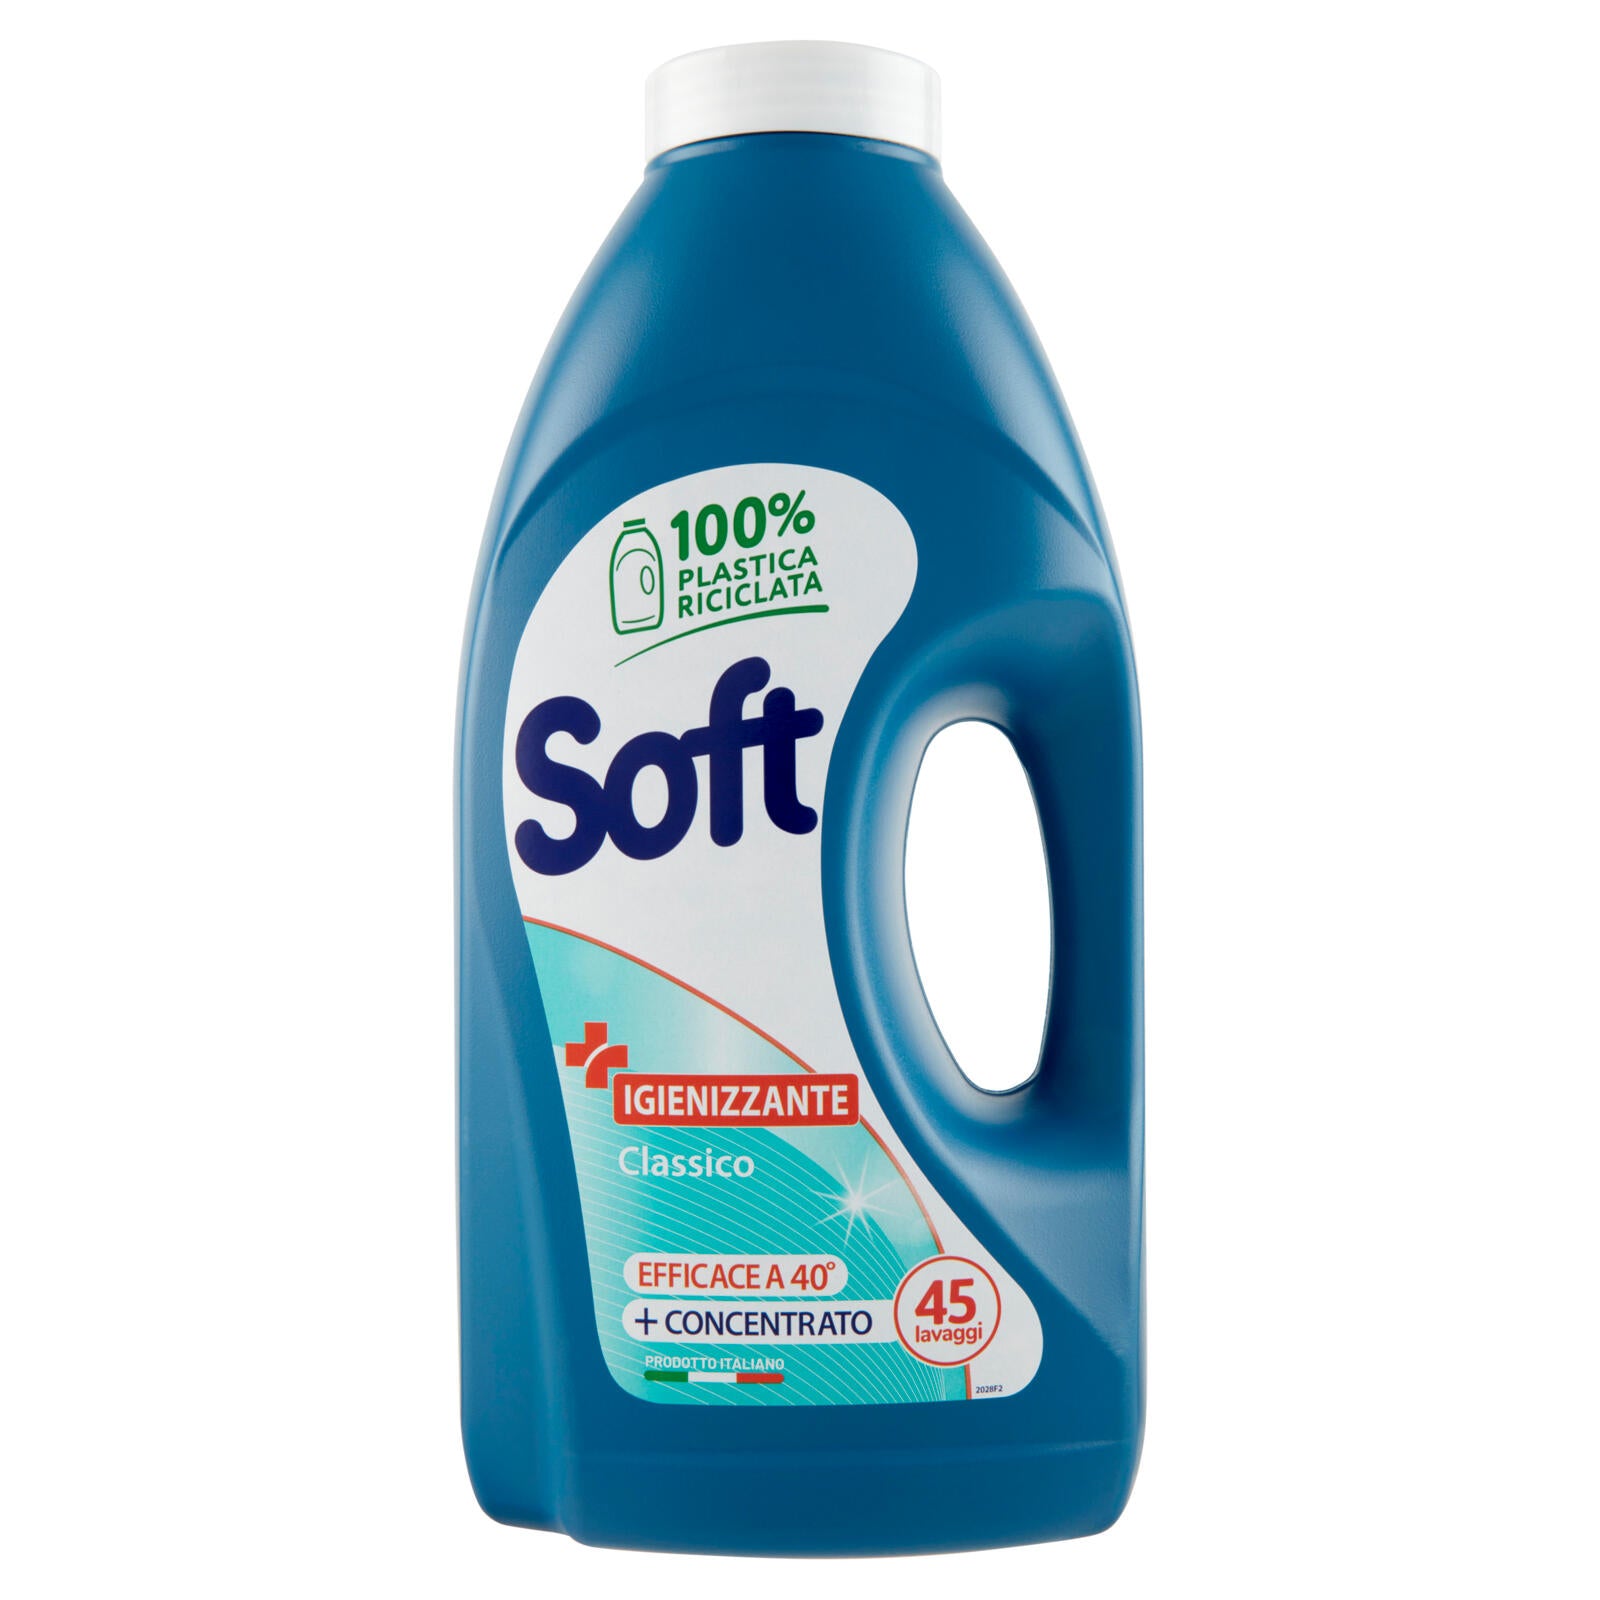 Soft Igienizzante Classico 45 lavaggi	 2250 ml